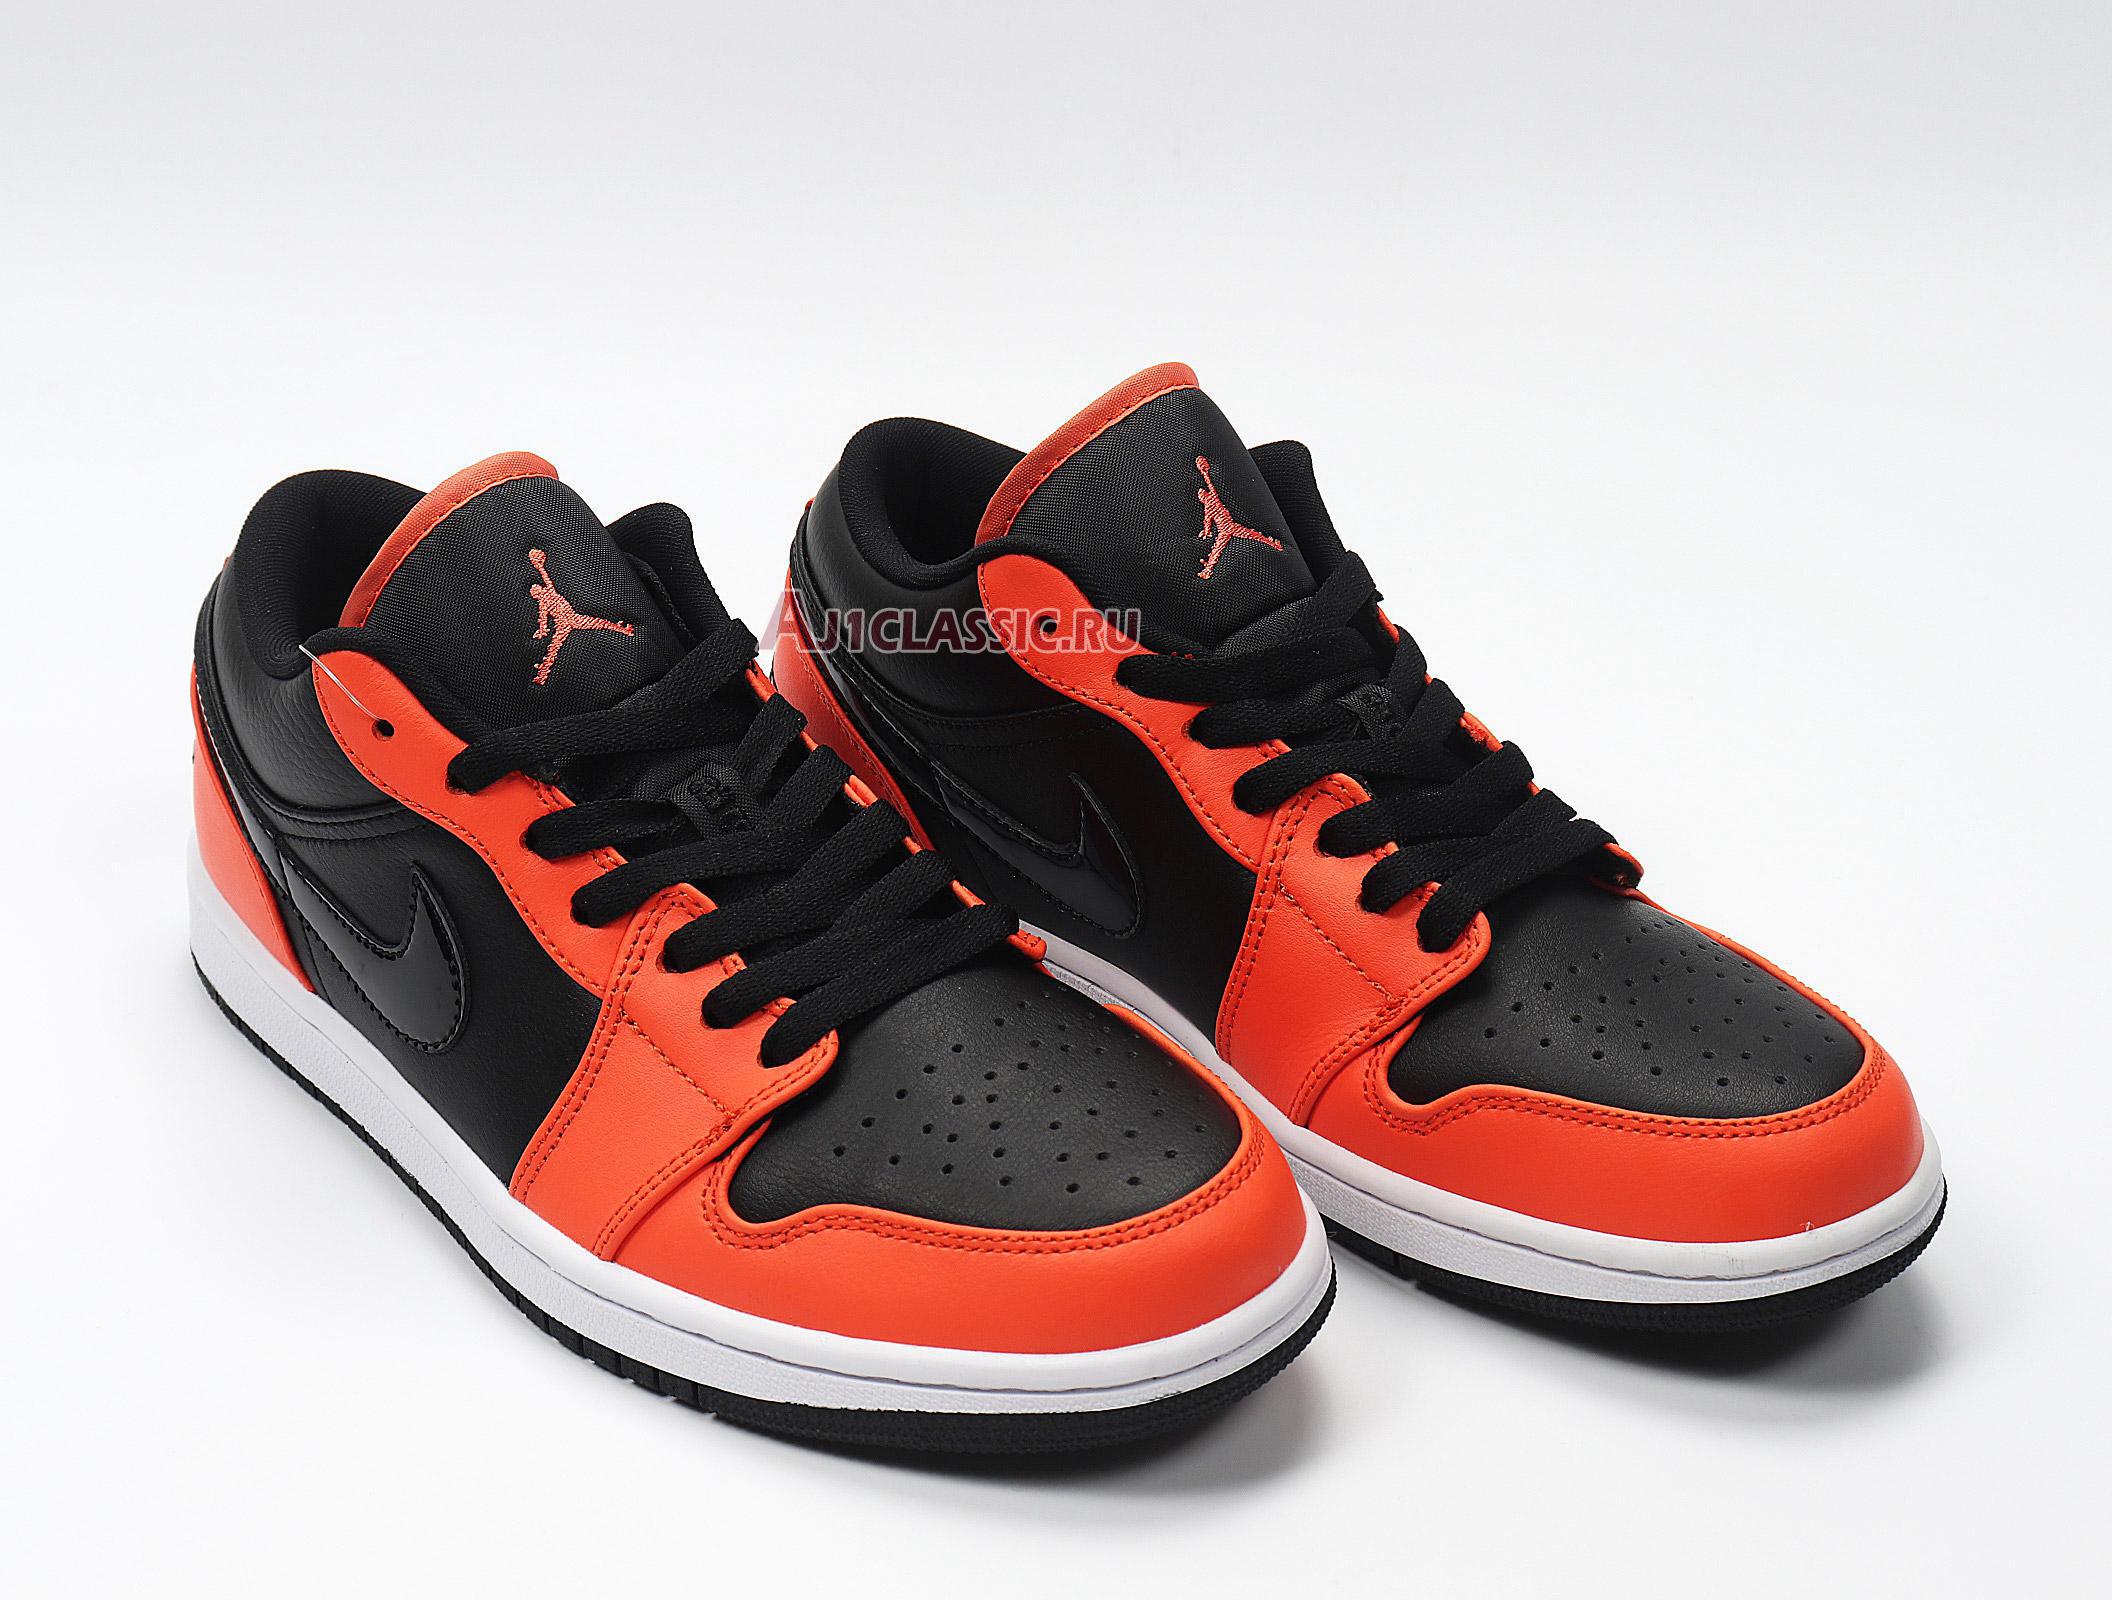 Air Jordan 1 Low "Black Orange Toe" CK3022-008